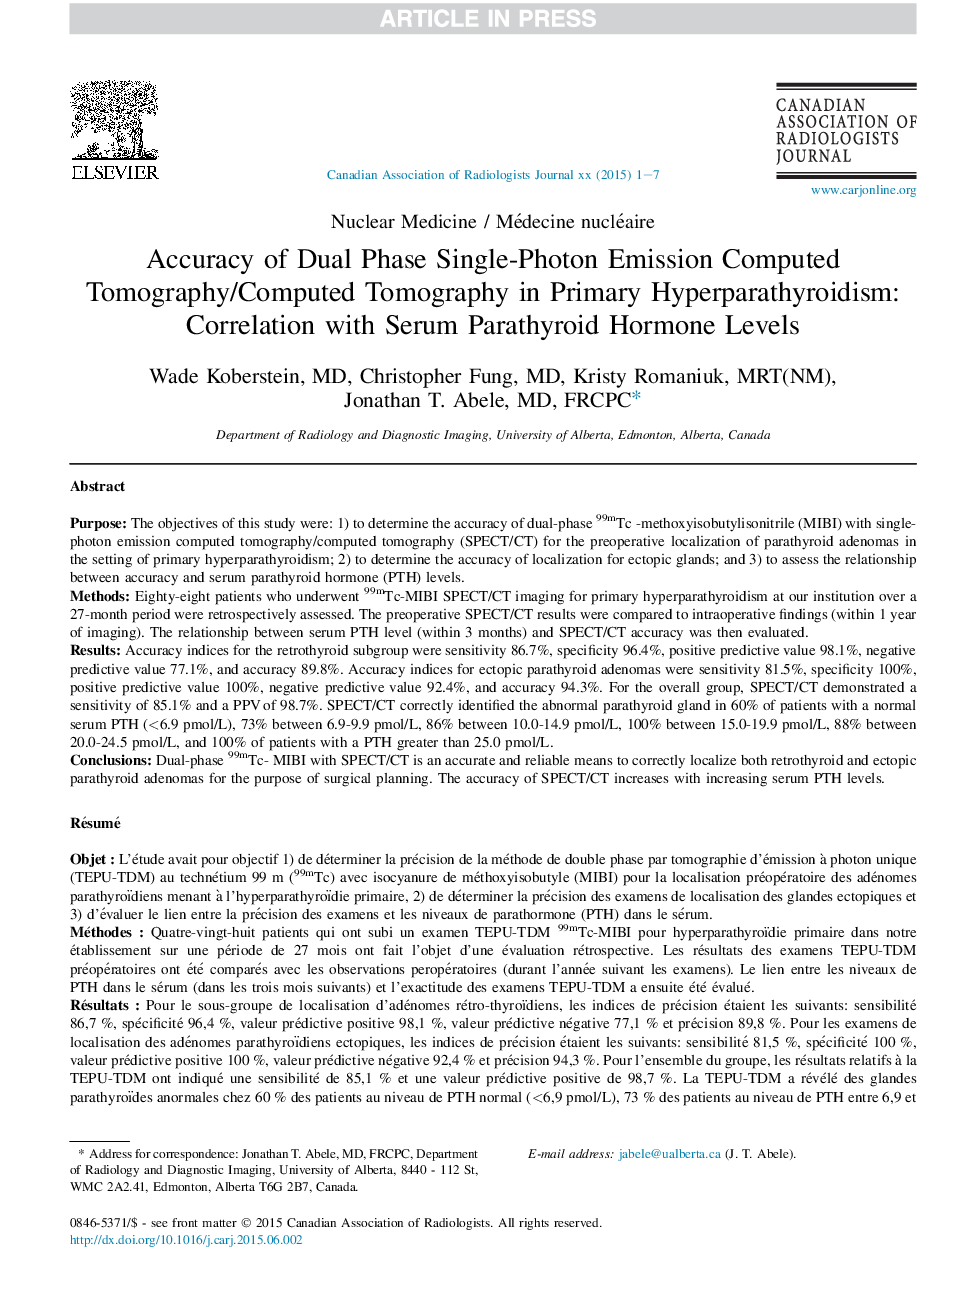 دقت دو فاز تونوگرافی کامپیوتری انتشار یک تک فوتون / توموگرافی کامپیوتری در ابتلا به هیپرپاراتیروئیدیسم: ارتباط با سطح هورمون پاراتیروئید سرم 